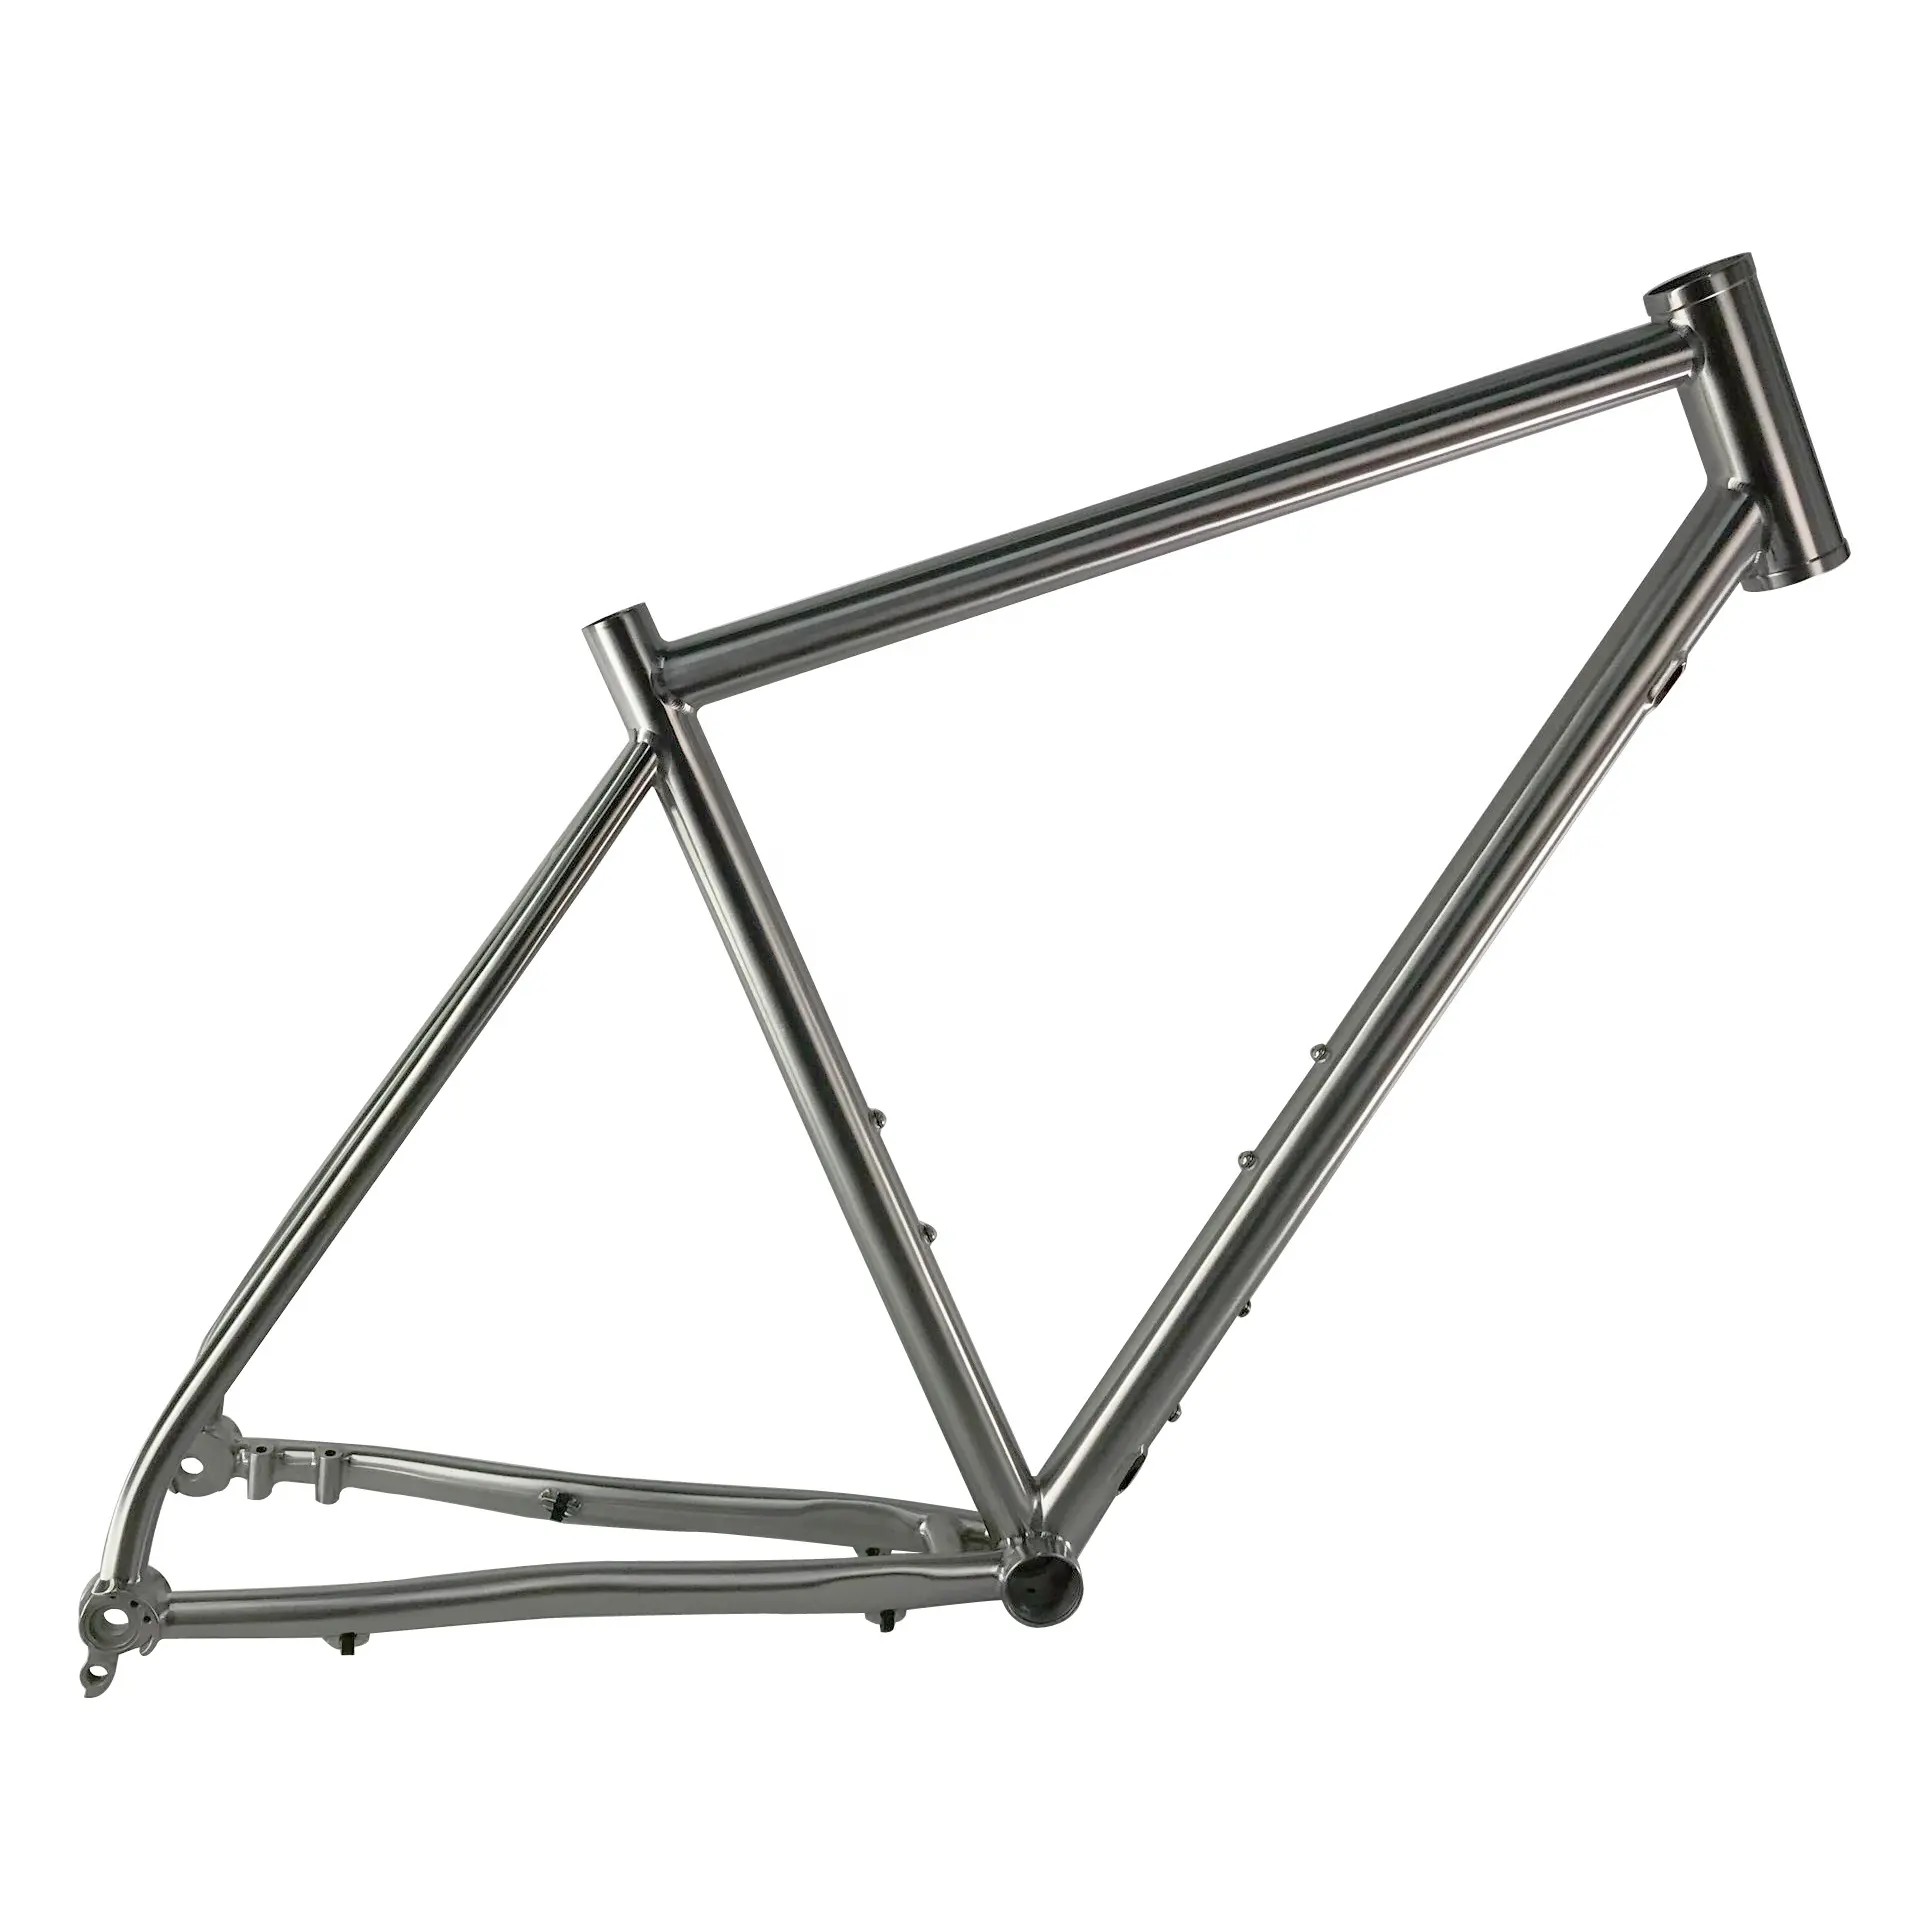 off road gravel titanium bike frame 51cm size accept custom for flat disc brake